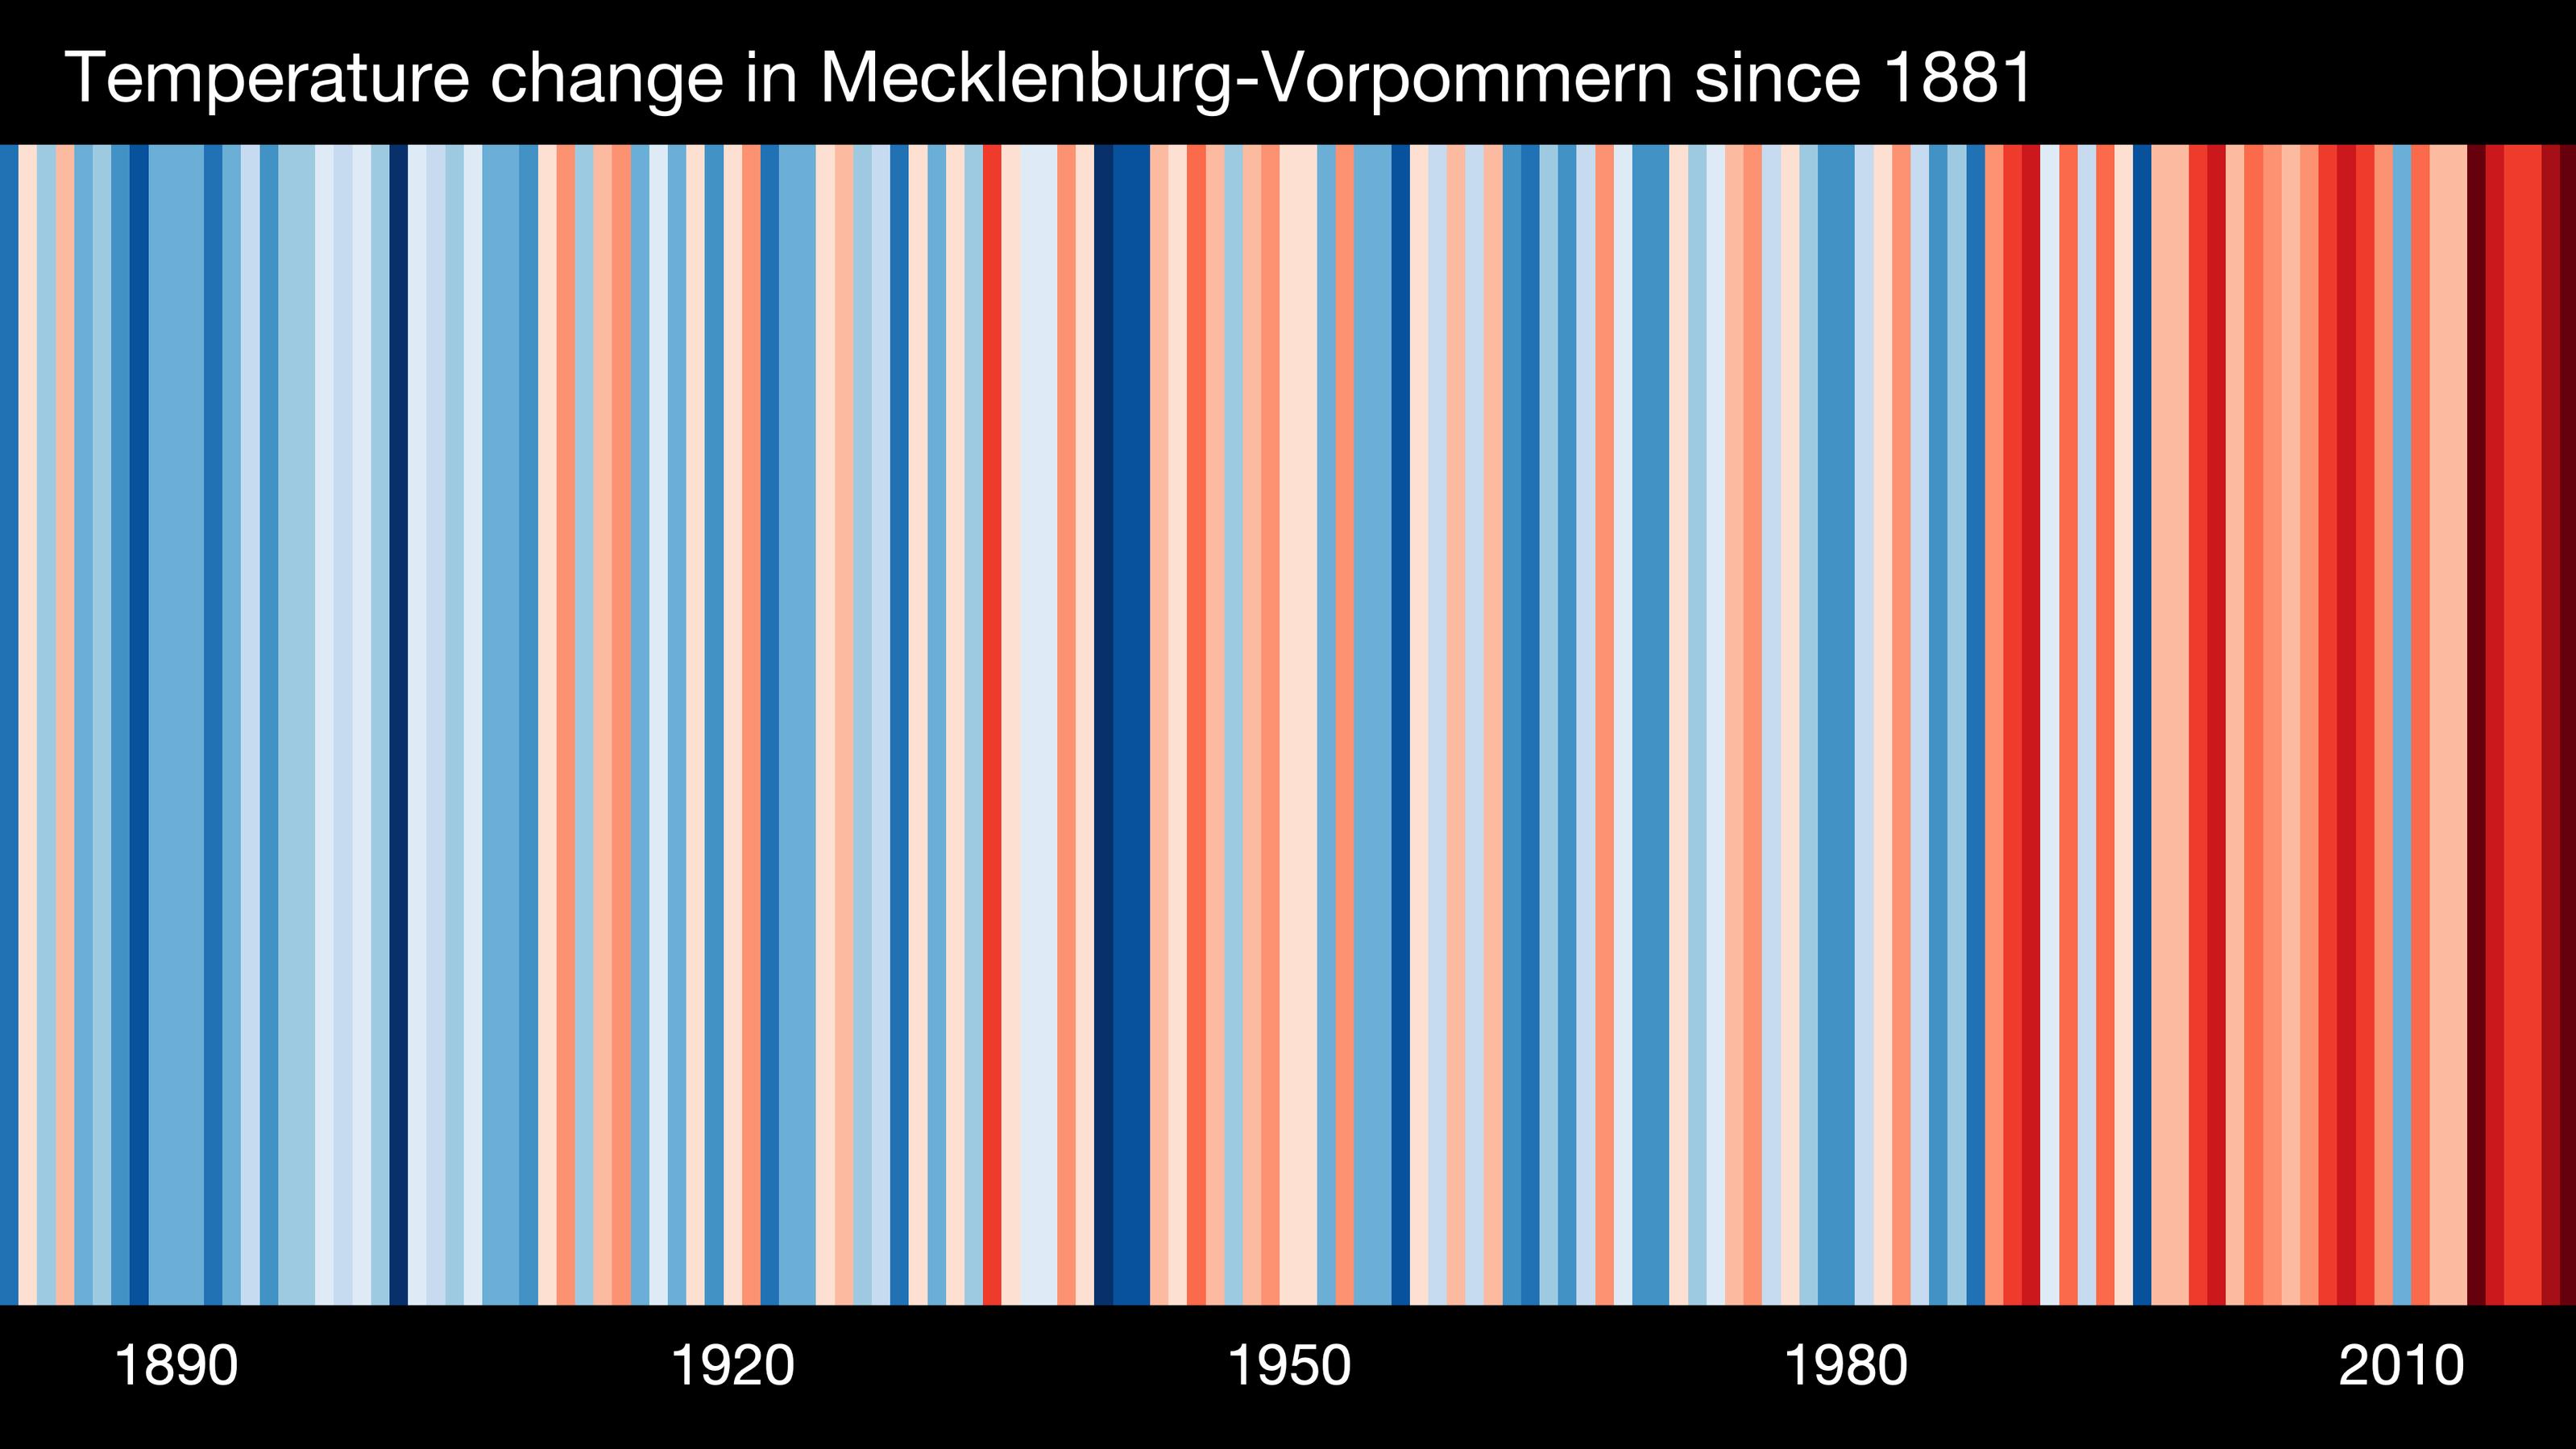 Der Barcode für Meckelenburg-Vorpommern